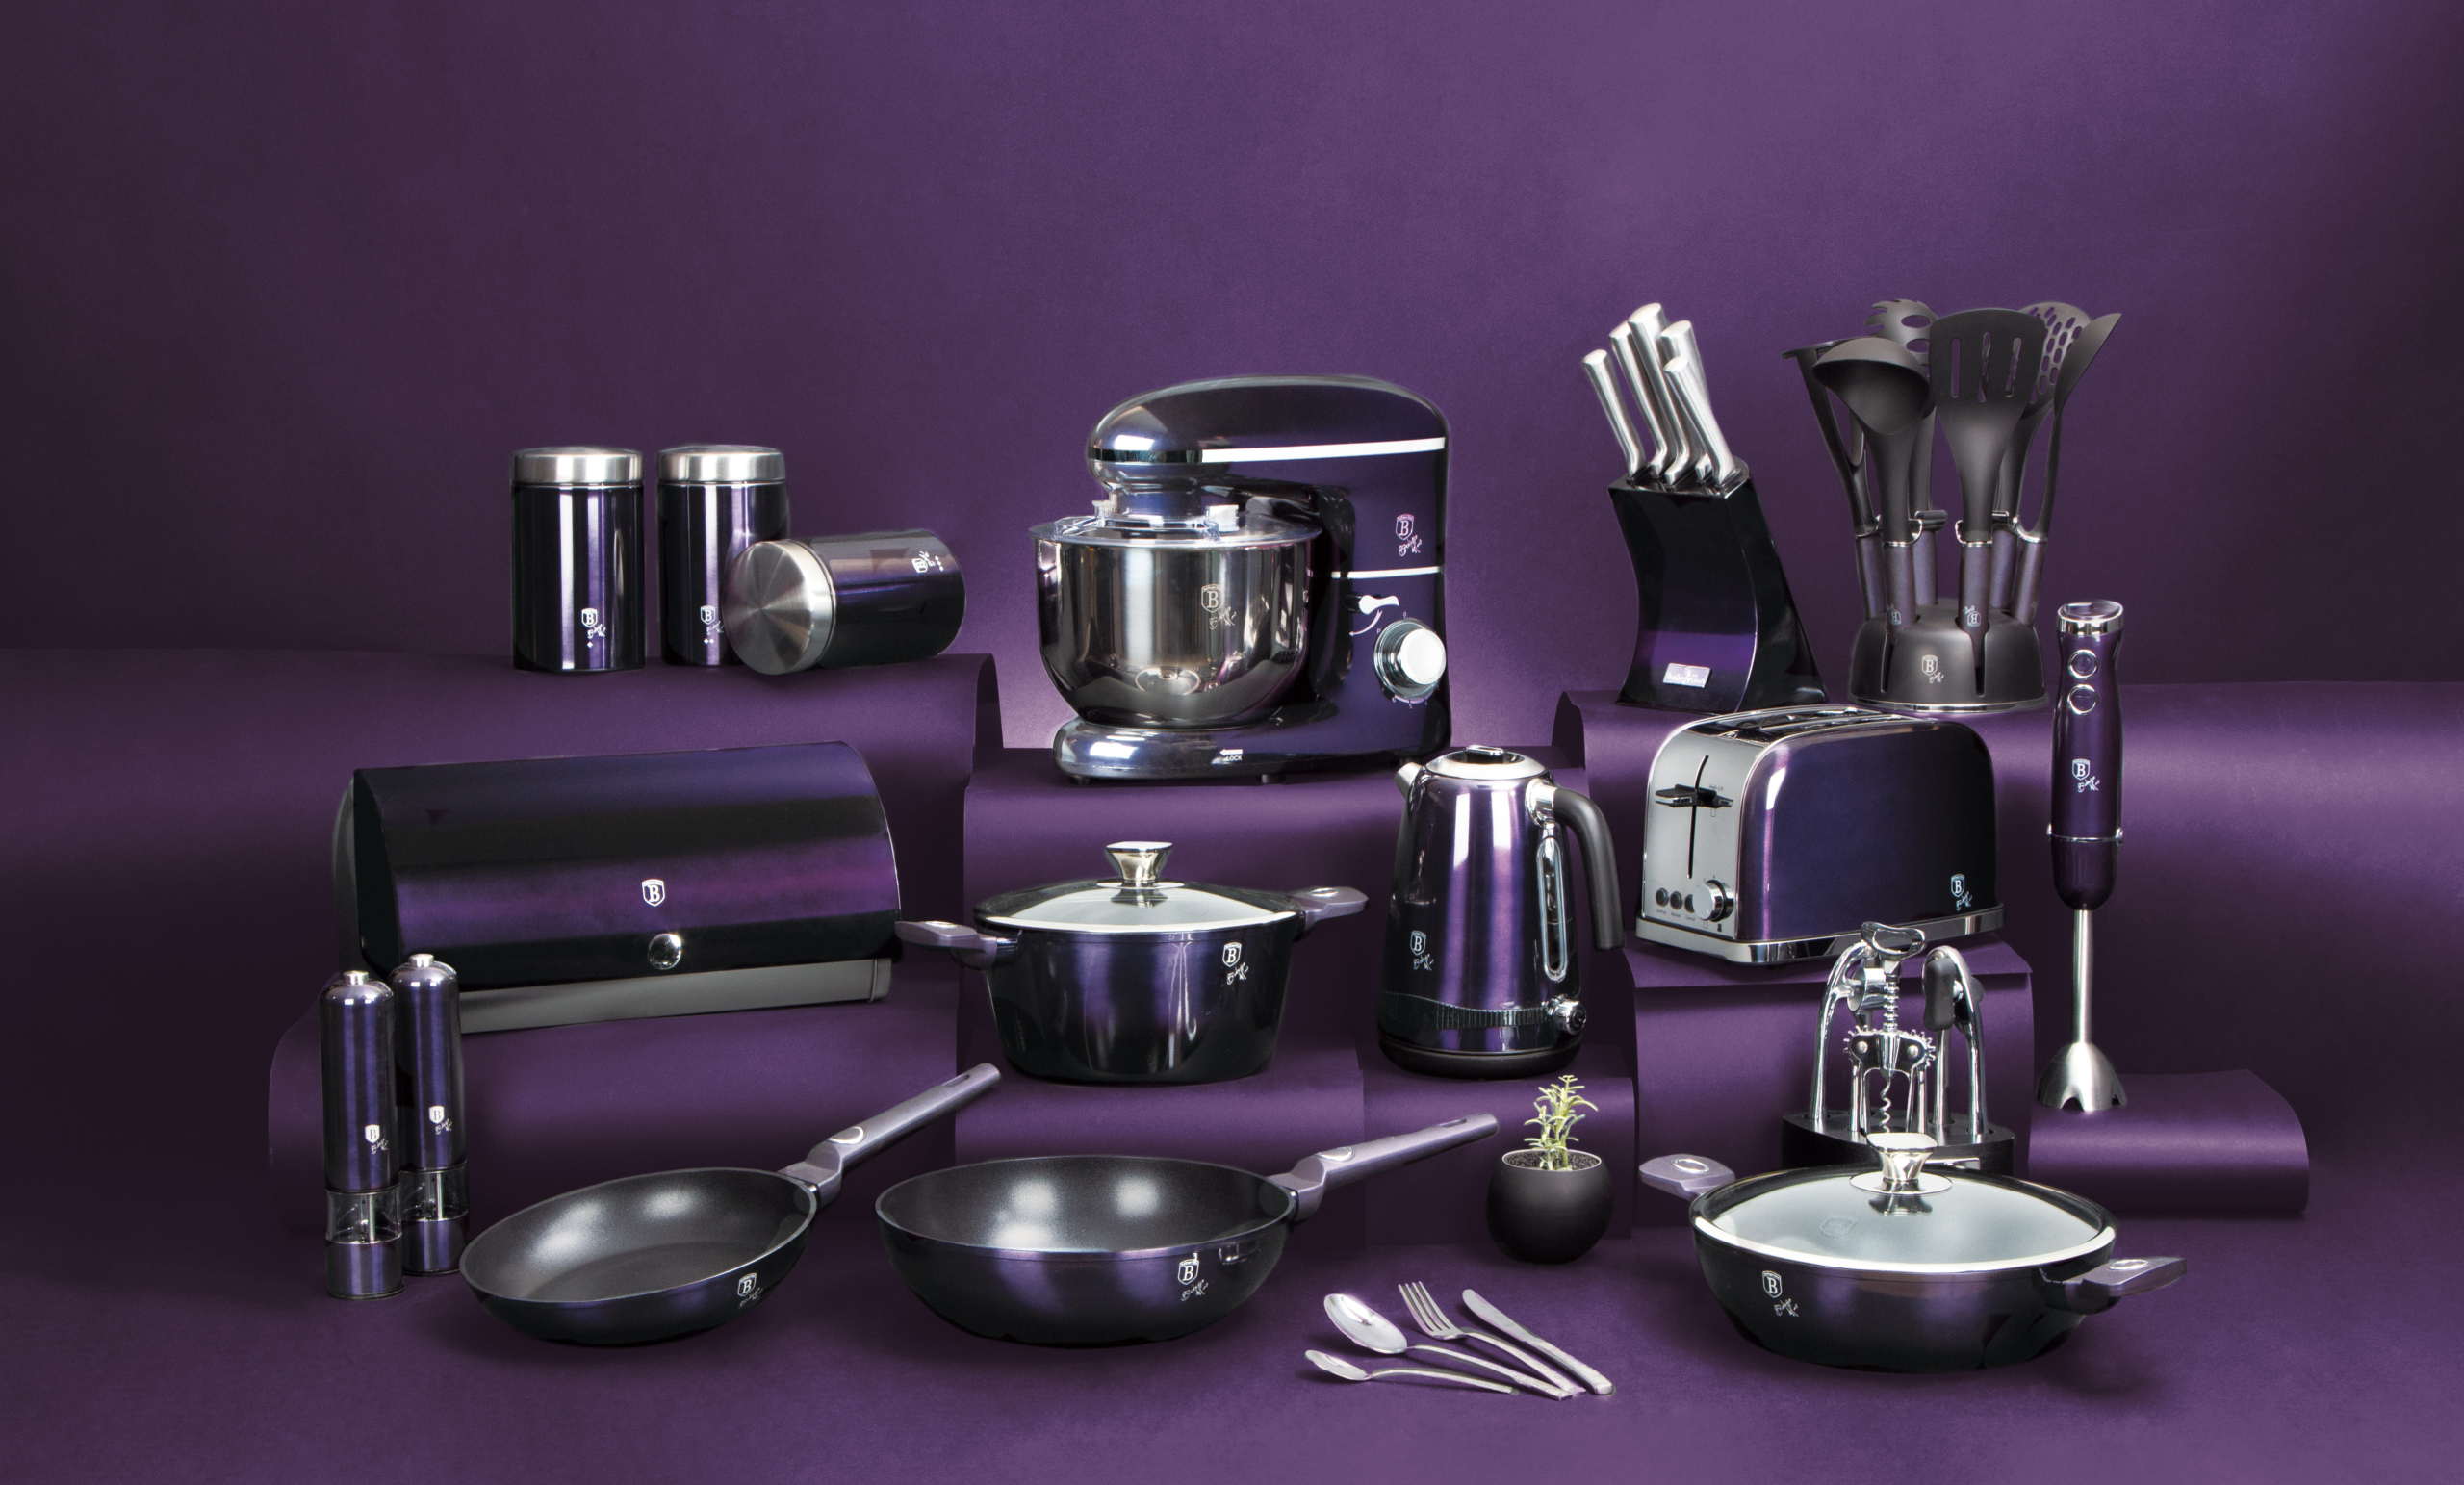 BerlingerHaus Purple Eclipse Collection teljes termékcsalád minden azonos színű konyhai eszközzel